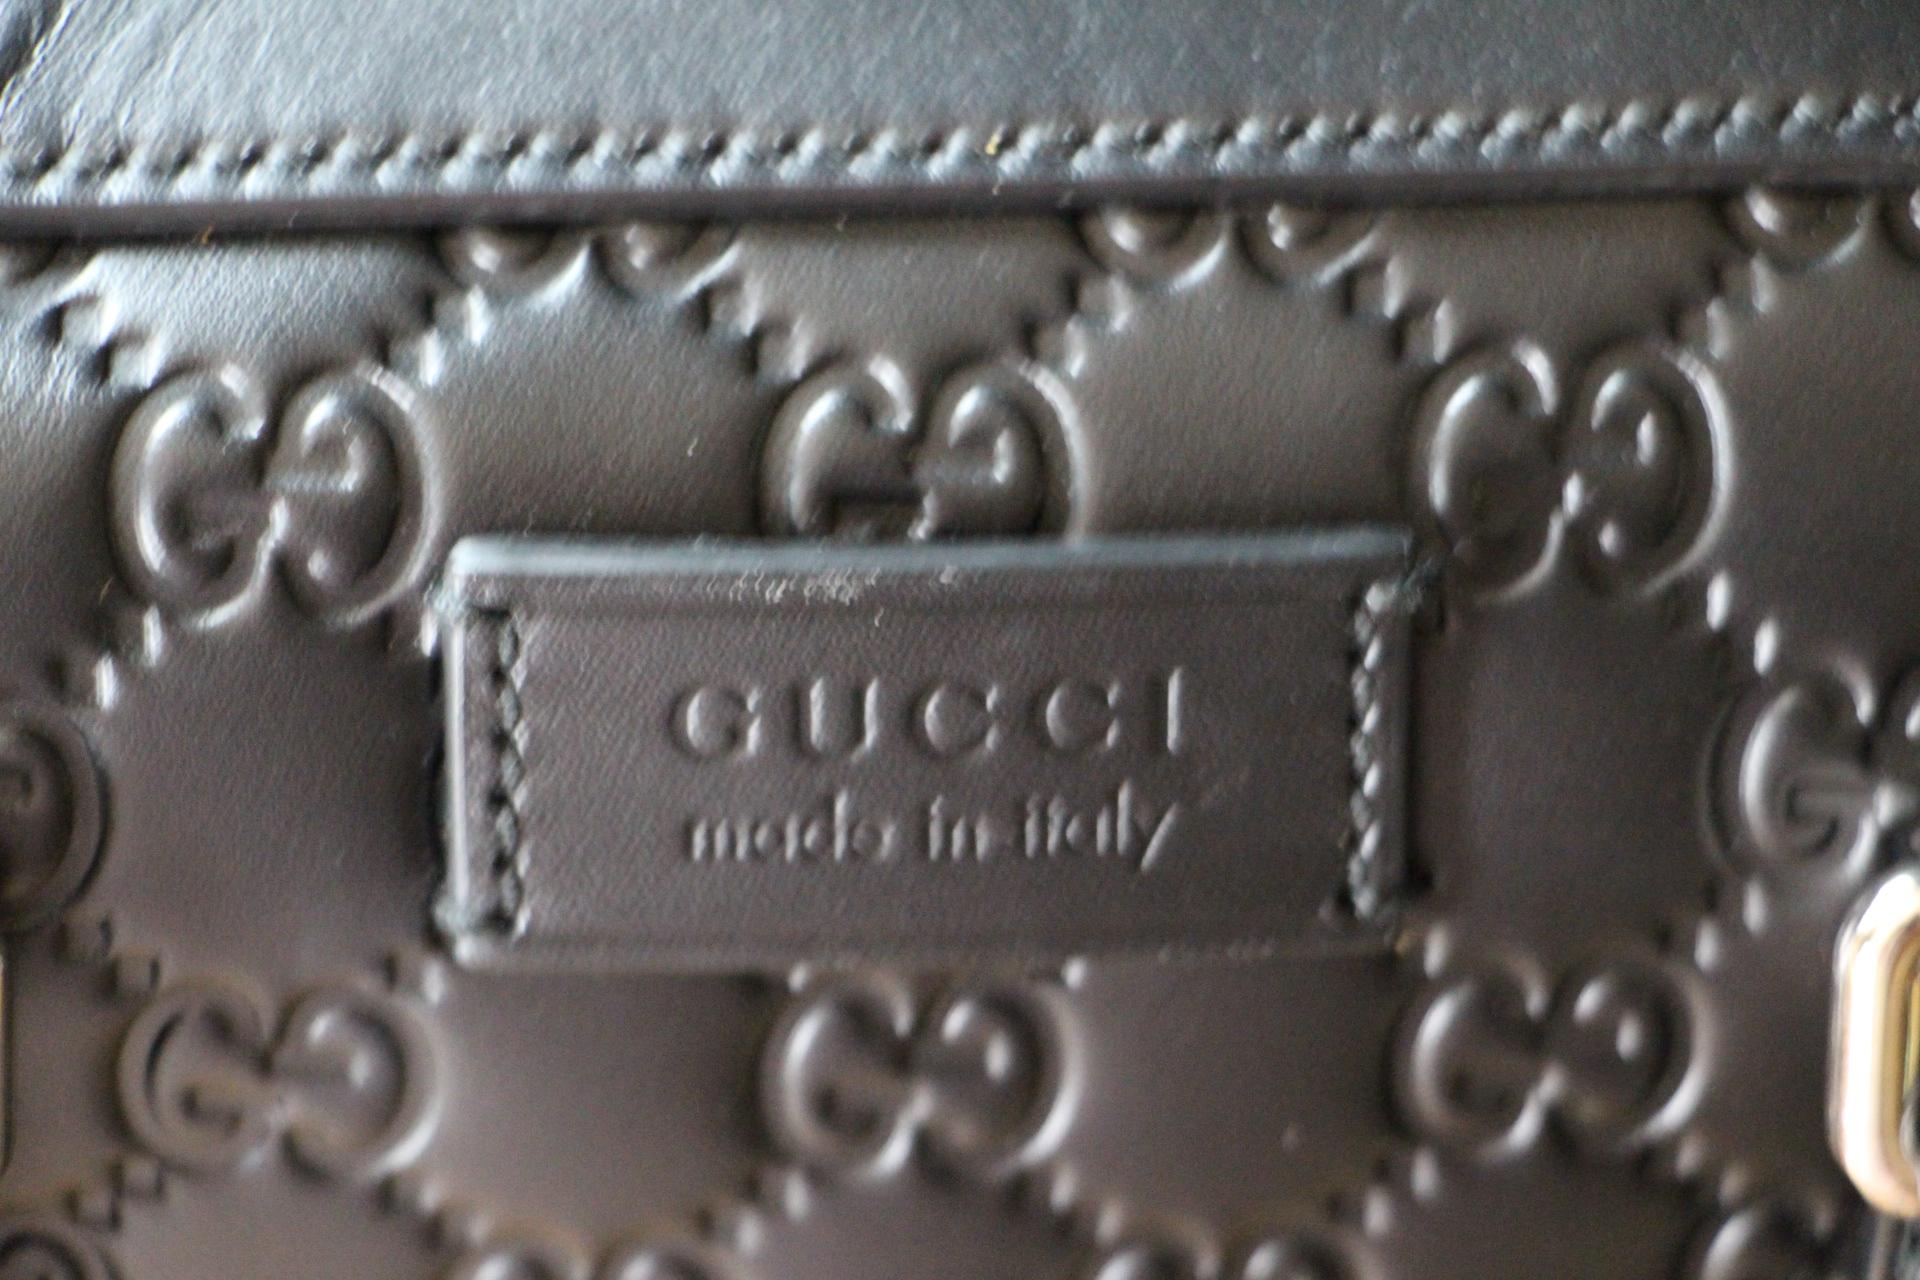 Italian Gucci Black Leather Signature Bag , Gucci Signature Briefcase